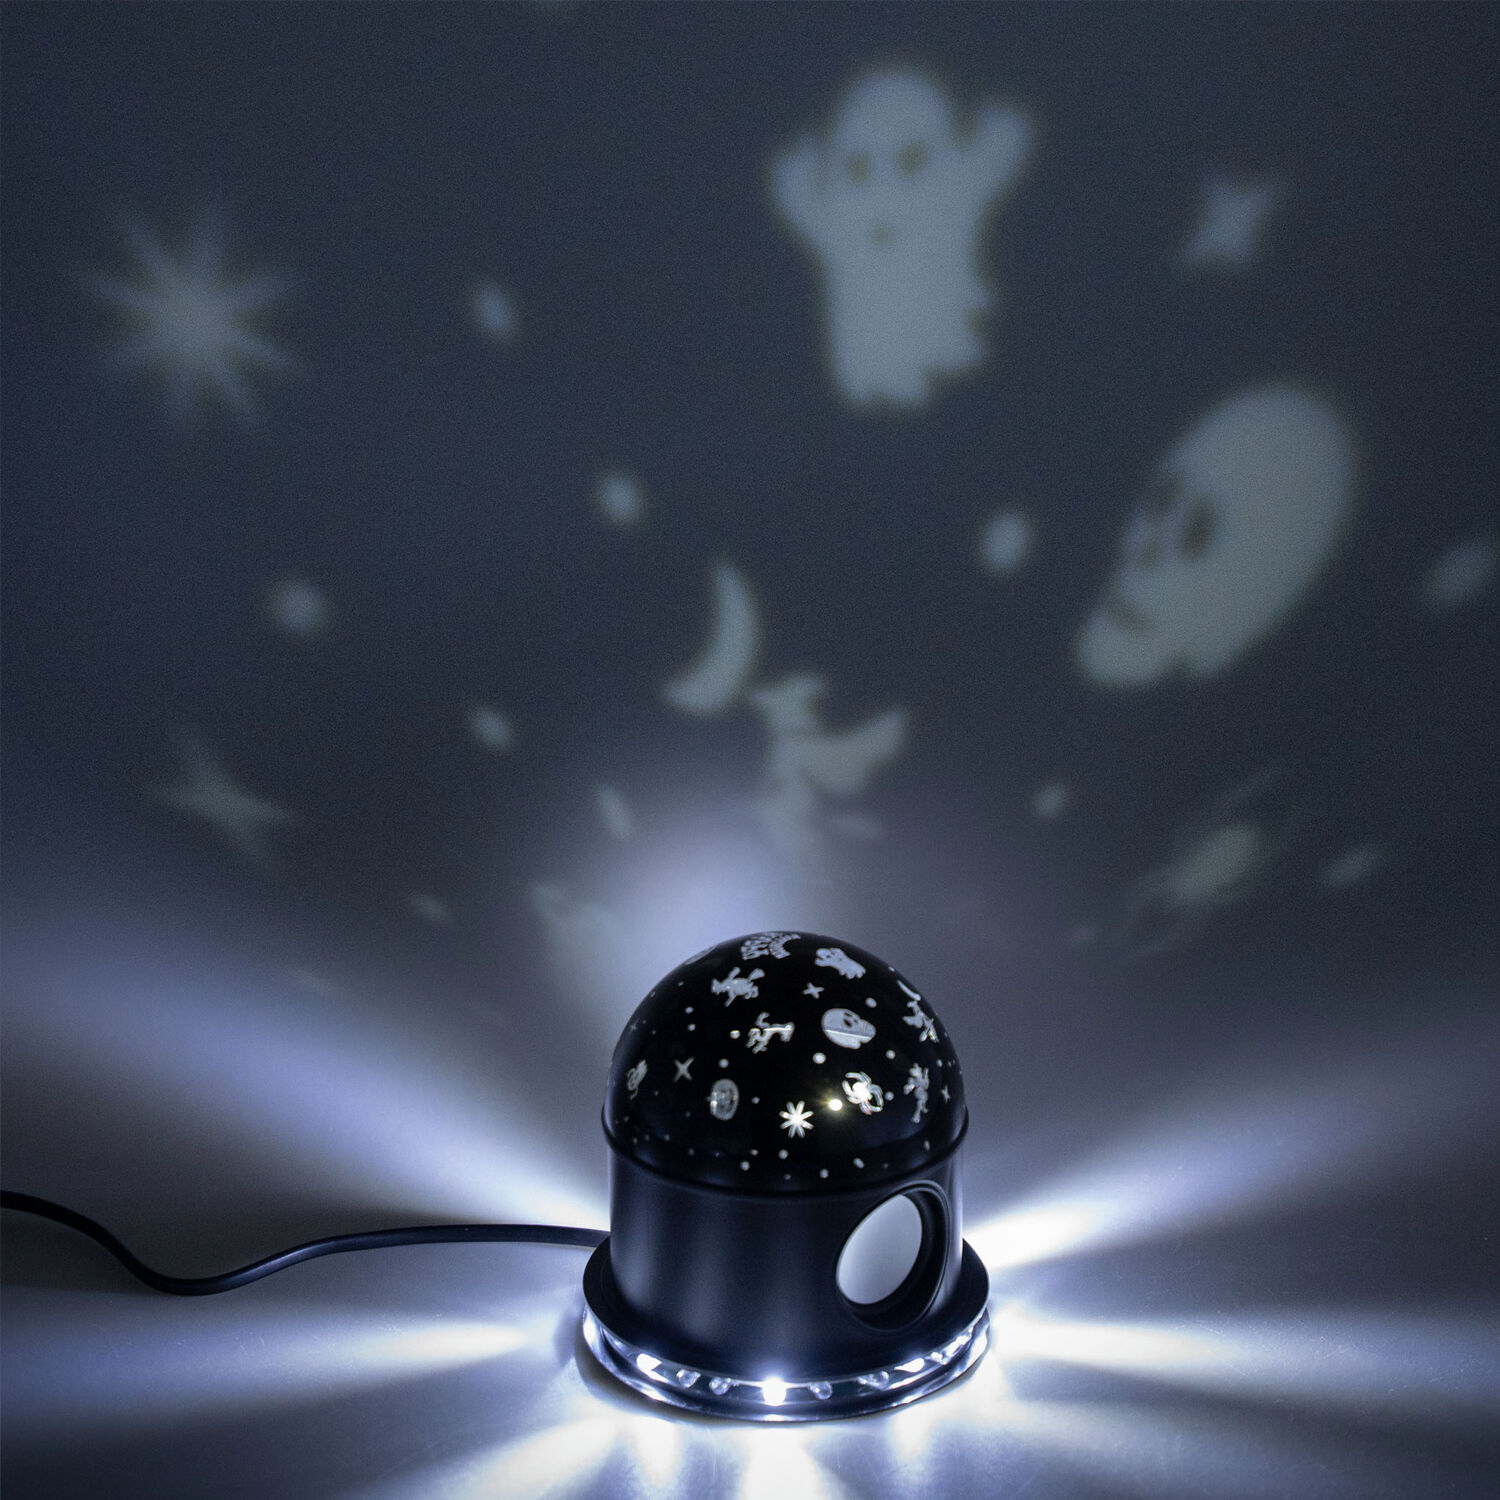 NEU Halloween-Licht-Projektor Diskokugel mit Grusel-Motiven, 12x12x14cm